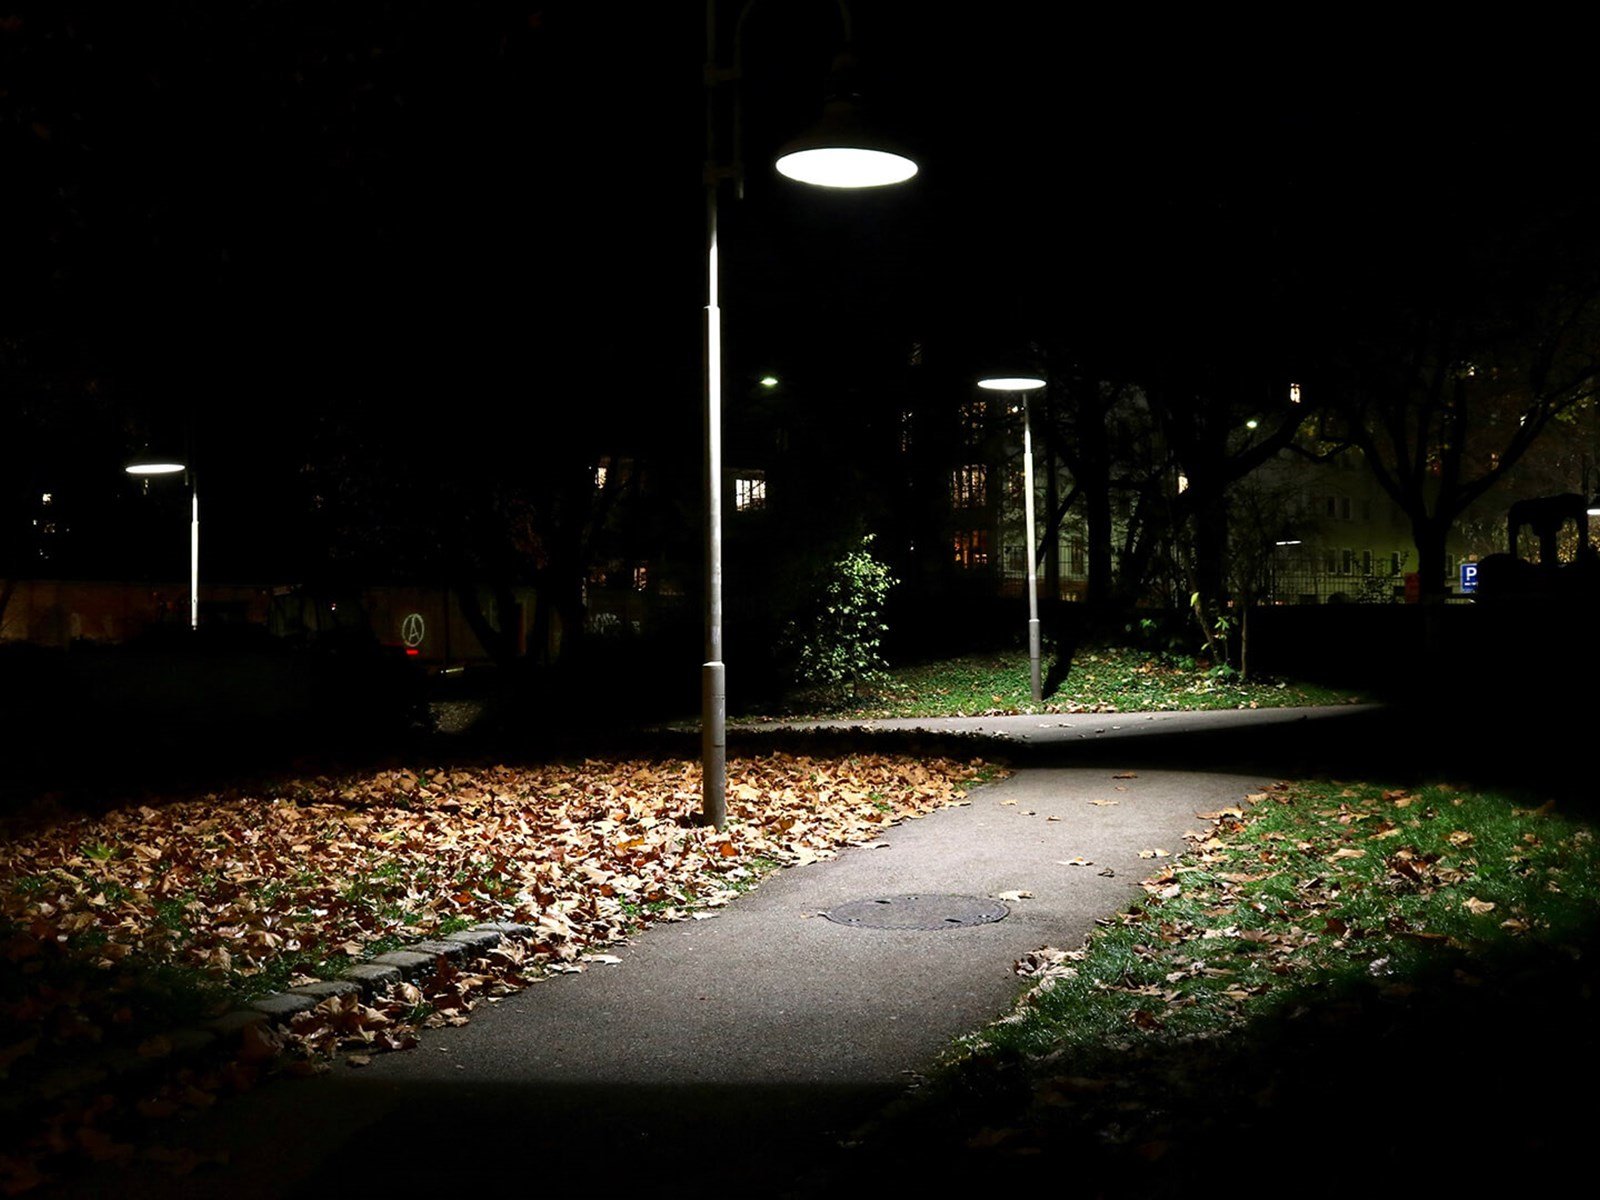 Gadelys oplyser stiområde om aftenen